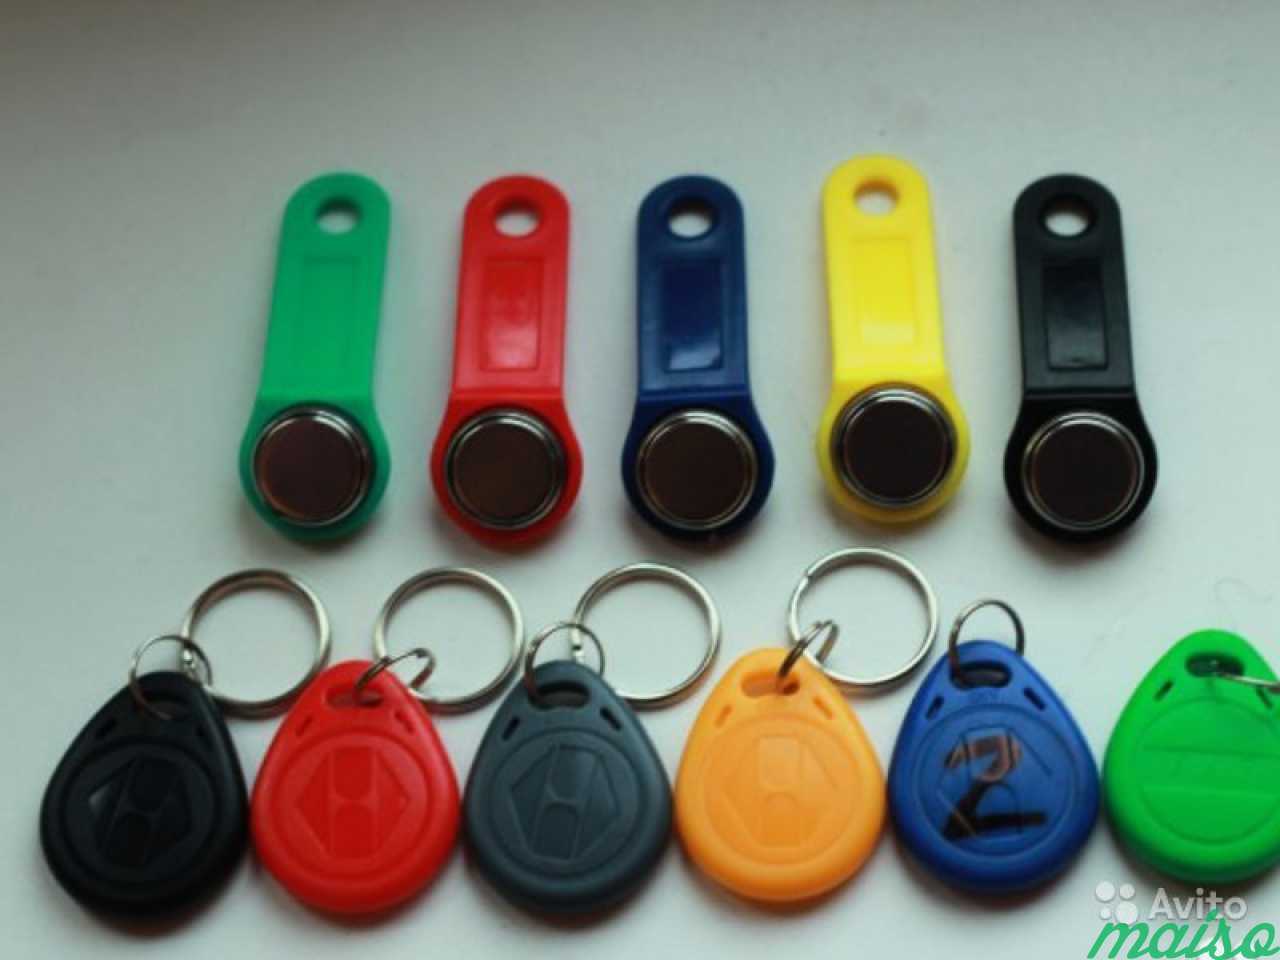 Домофонные ключи с доставкой в Колпино в Санкт-Петербурге. Фото 1